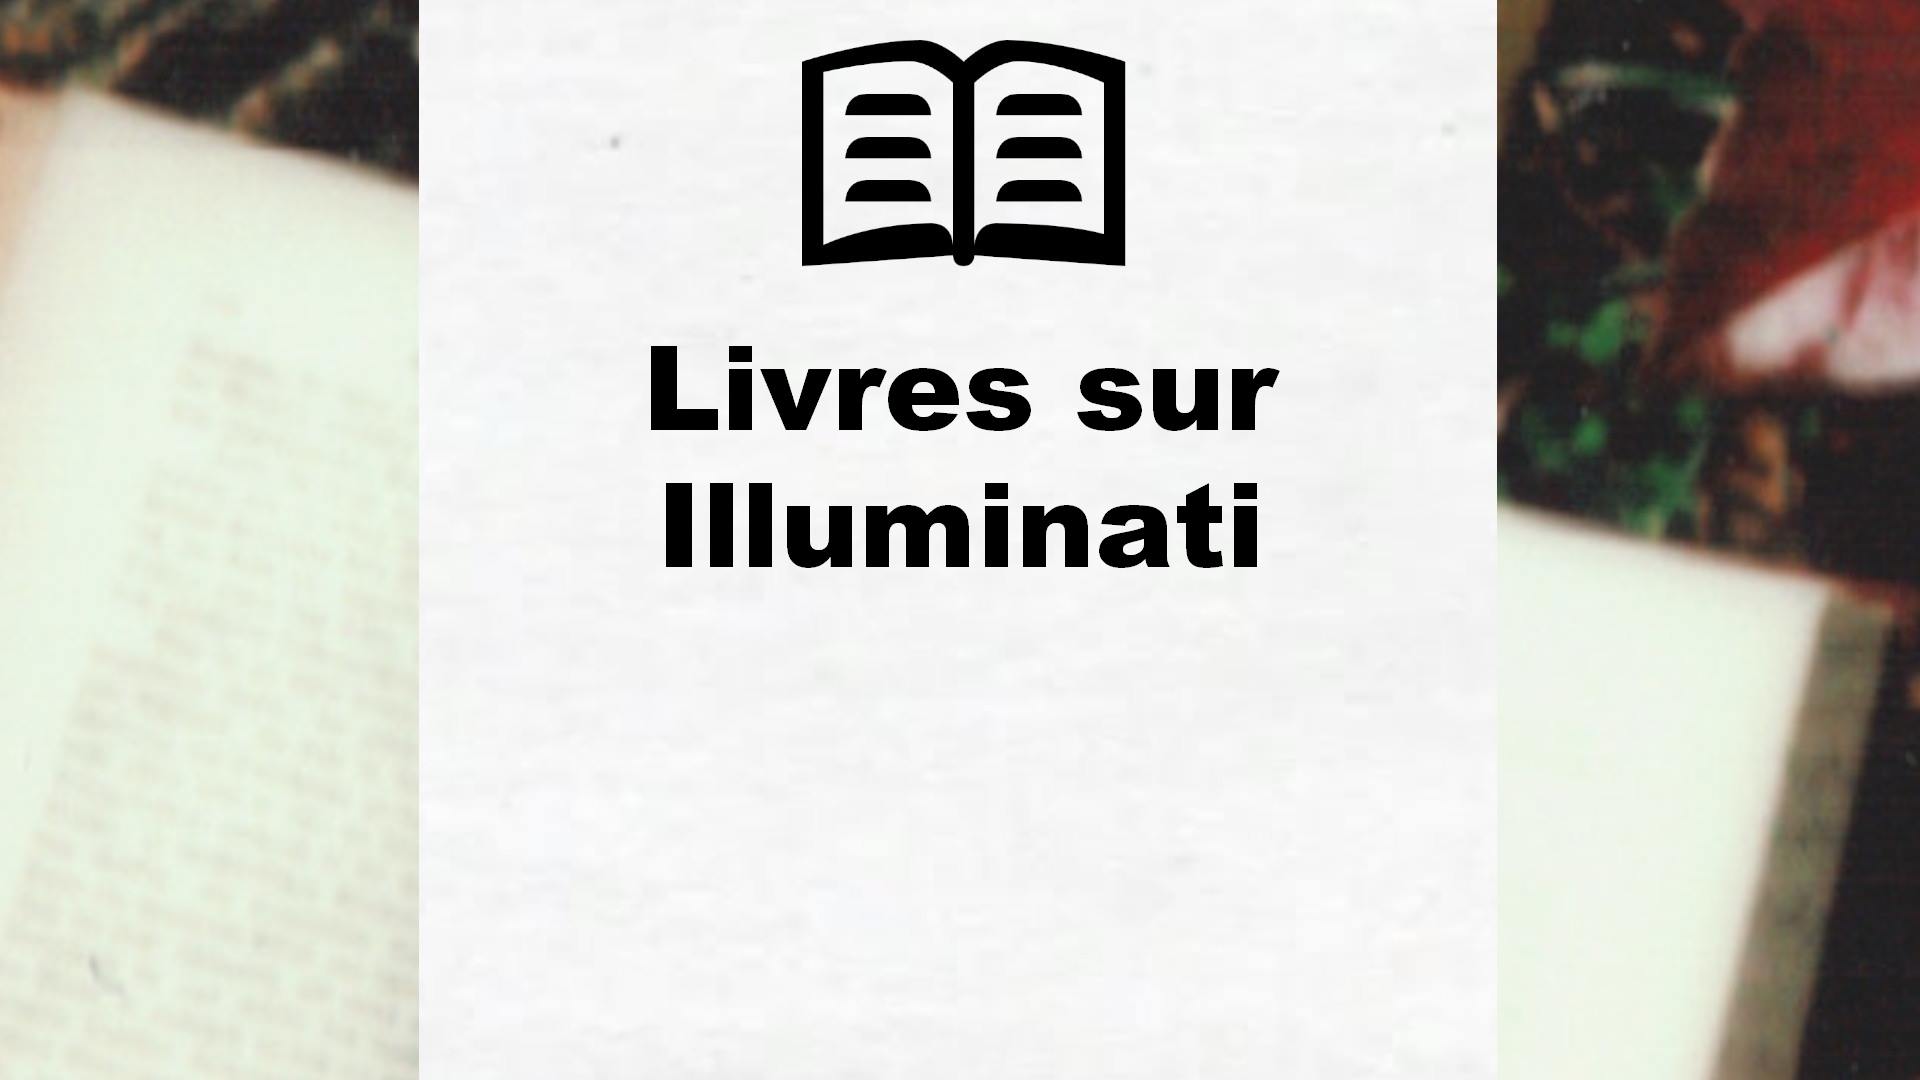 Livres sur Illuminati